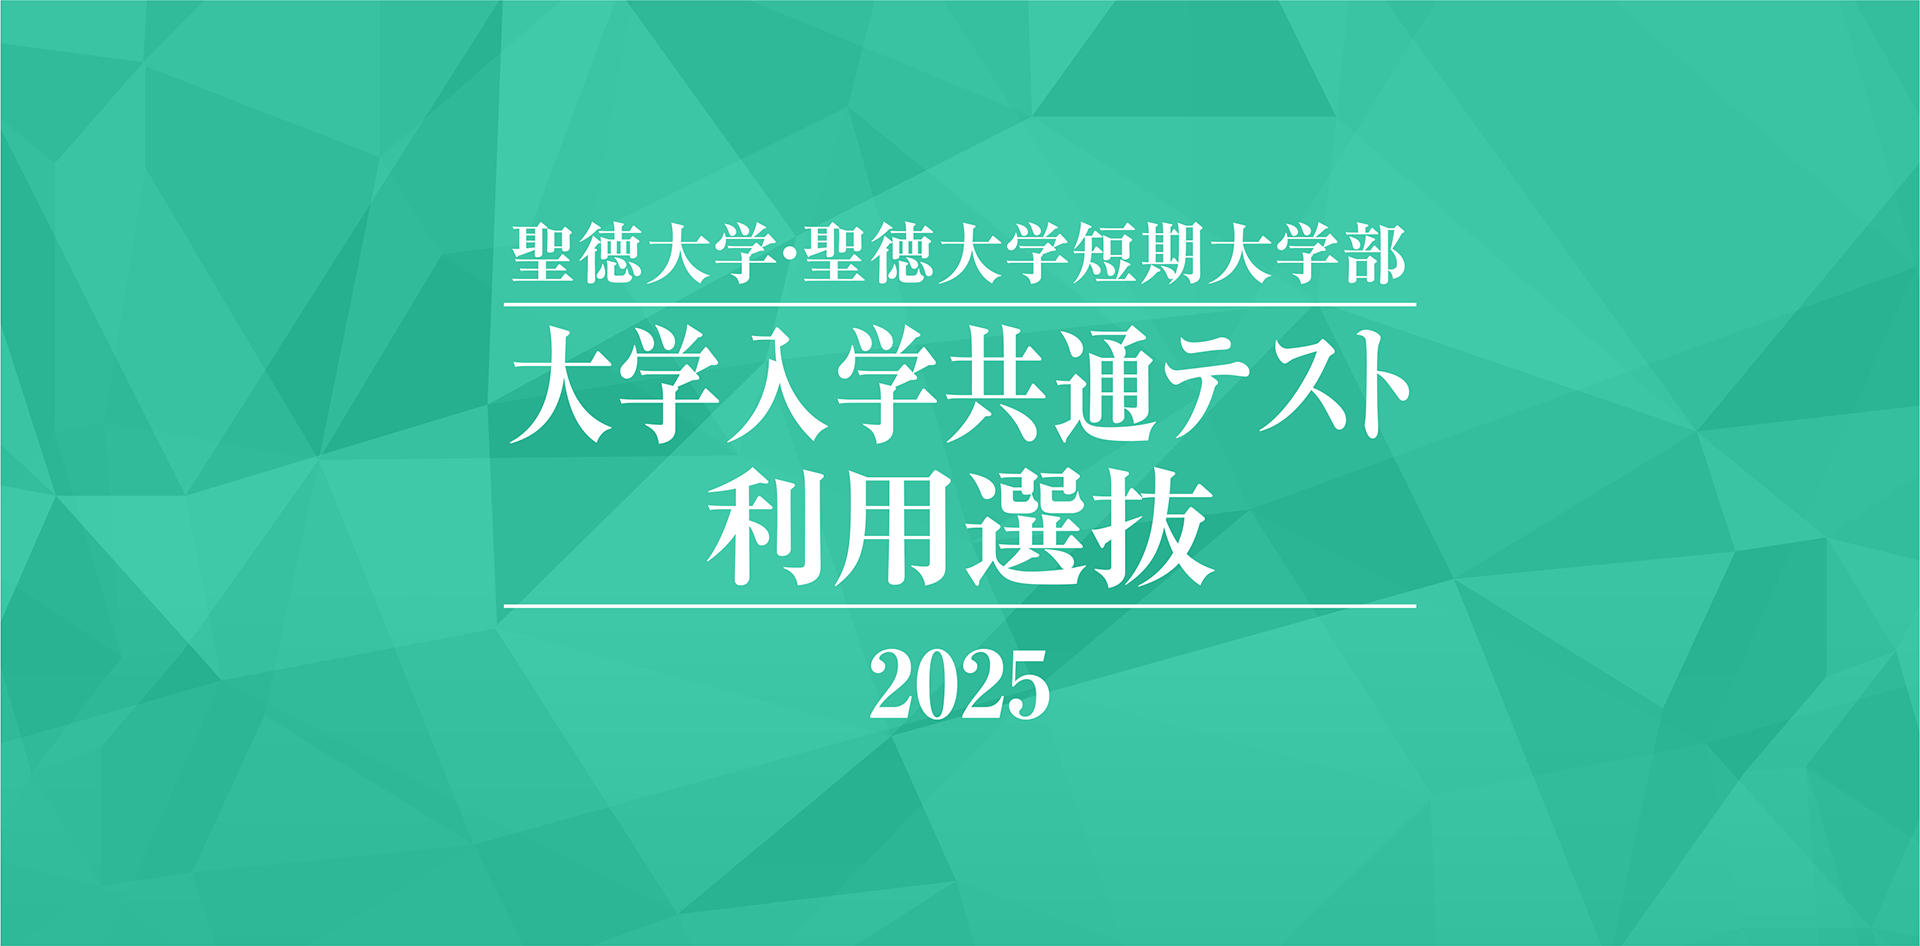 聖徳大学・聖徳大学短期大学部 大学入学共通テスト利用選抜 2025